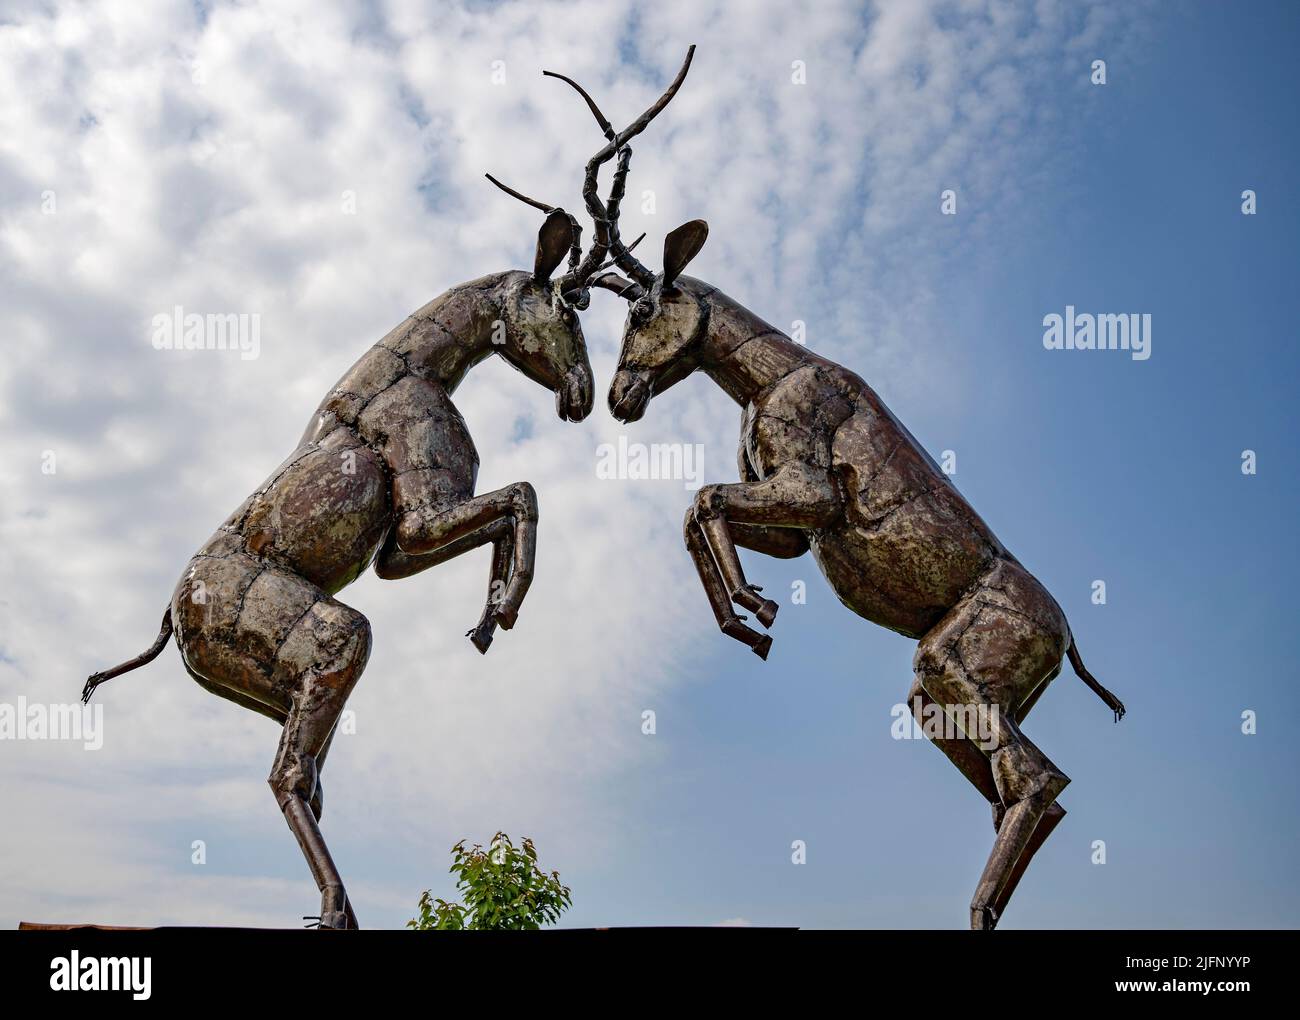 El Centro Británico de Hierro, Dama Gazelle Fighting, Exposición/Escultura Foto de stock